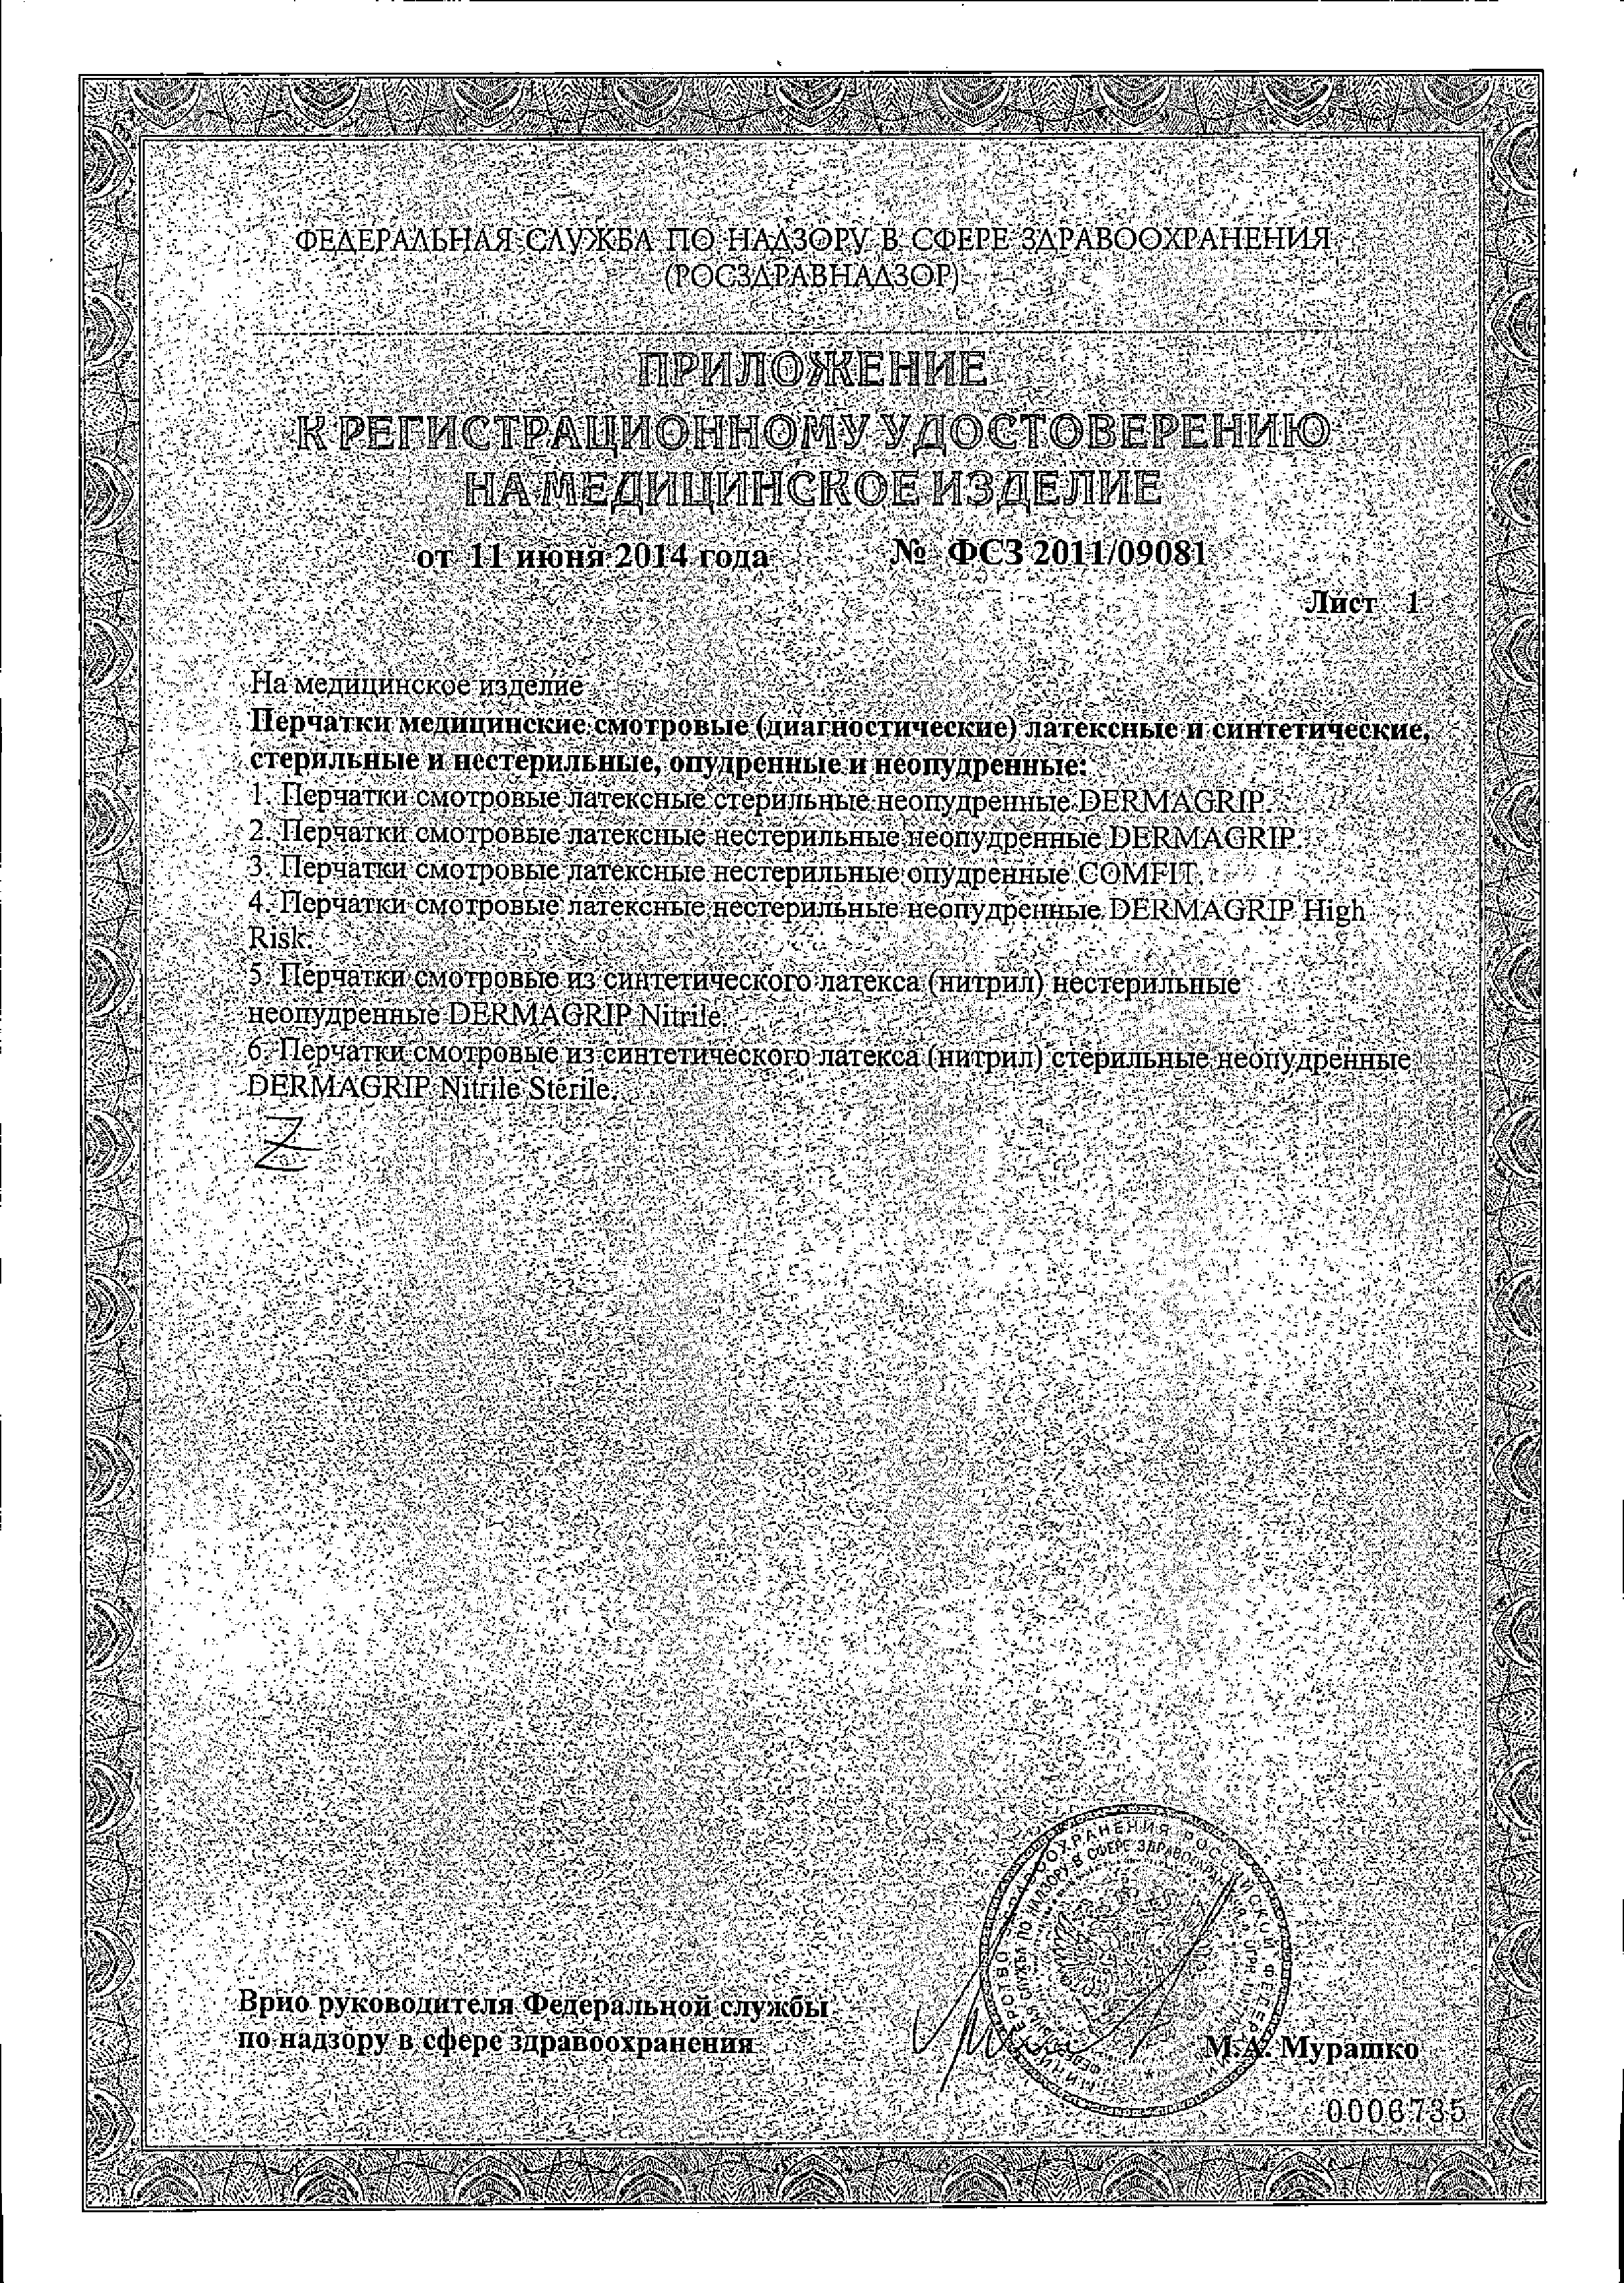 Перчатки латексные текстурированные Dermagrip Examination Classic сертификат